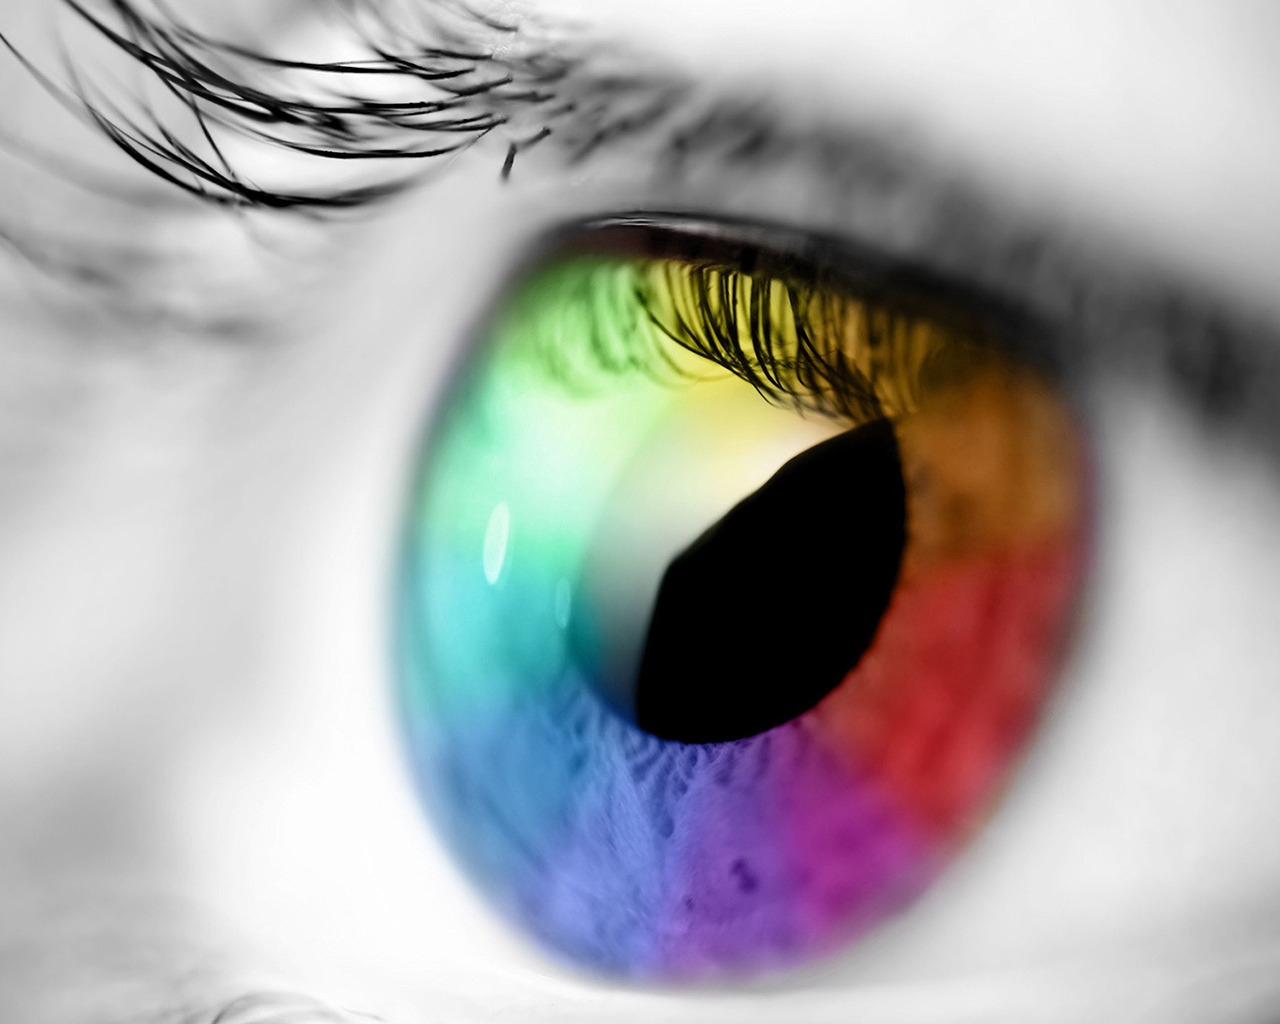 Rainbow Eye for 1280 x 1024 resolution